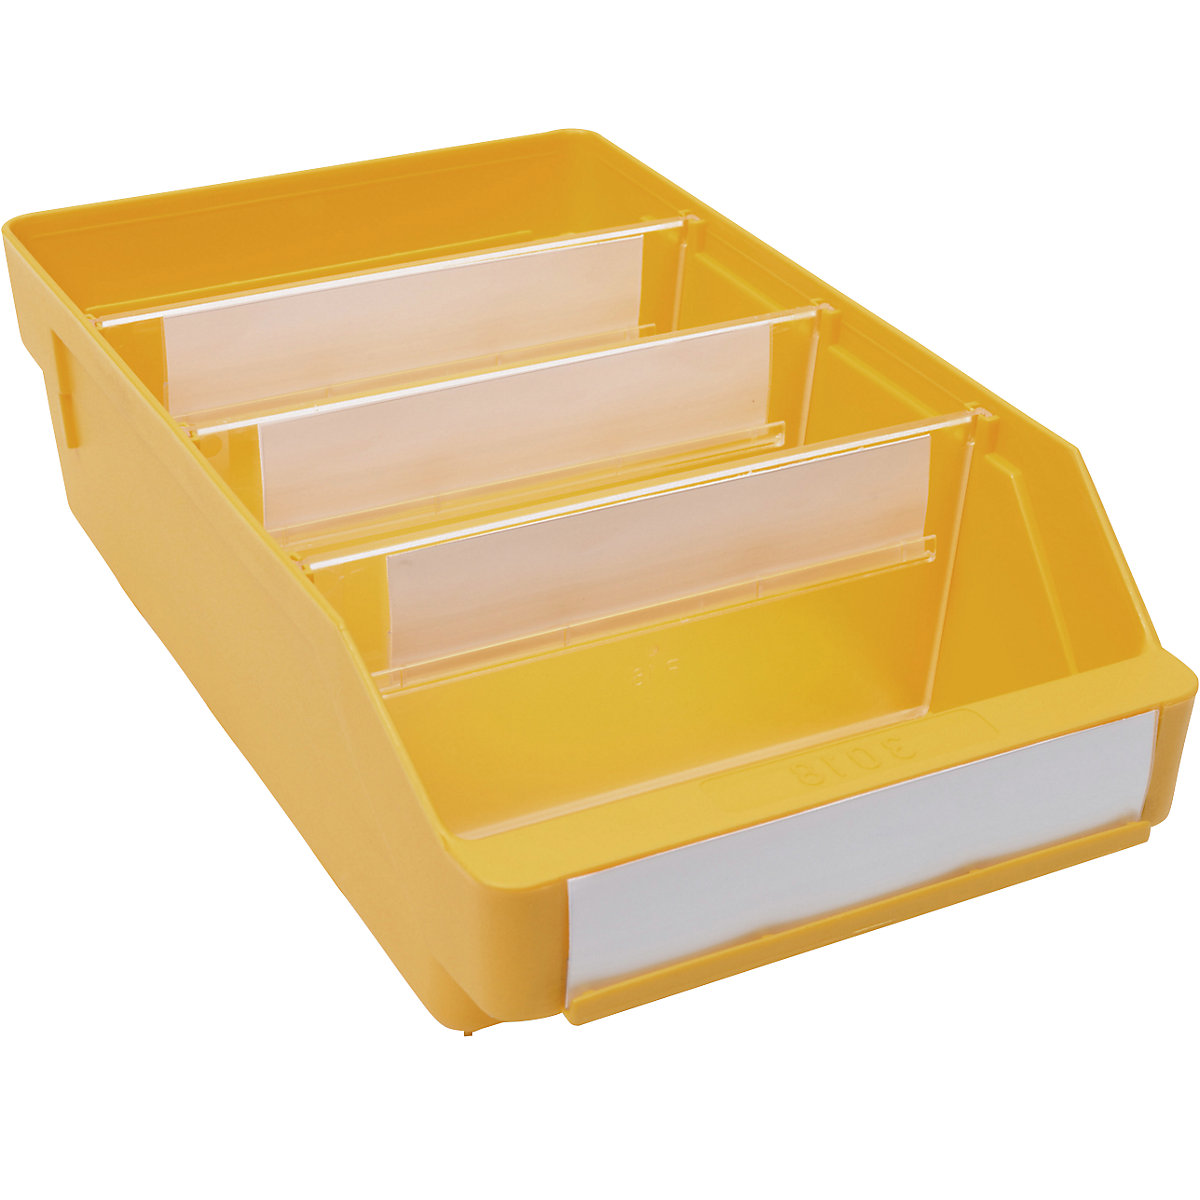 Kutija za regale od polipropilena otpornog na udarce – STEMO, u žutoj boji, DxŠxV 300 x 180 x 95 mm, pak. 20 kom.-13